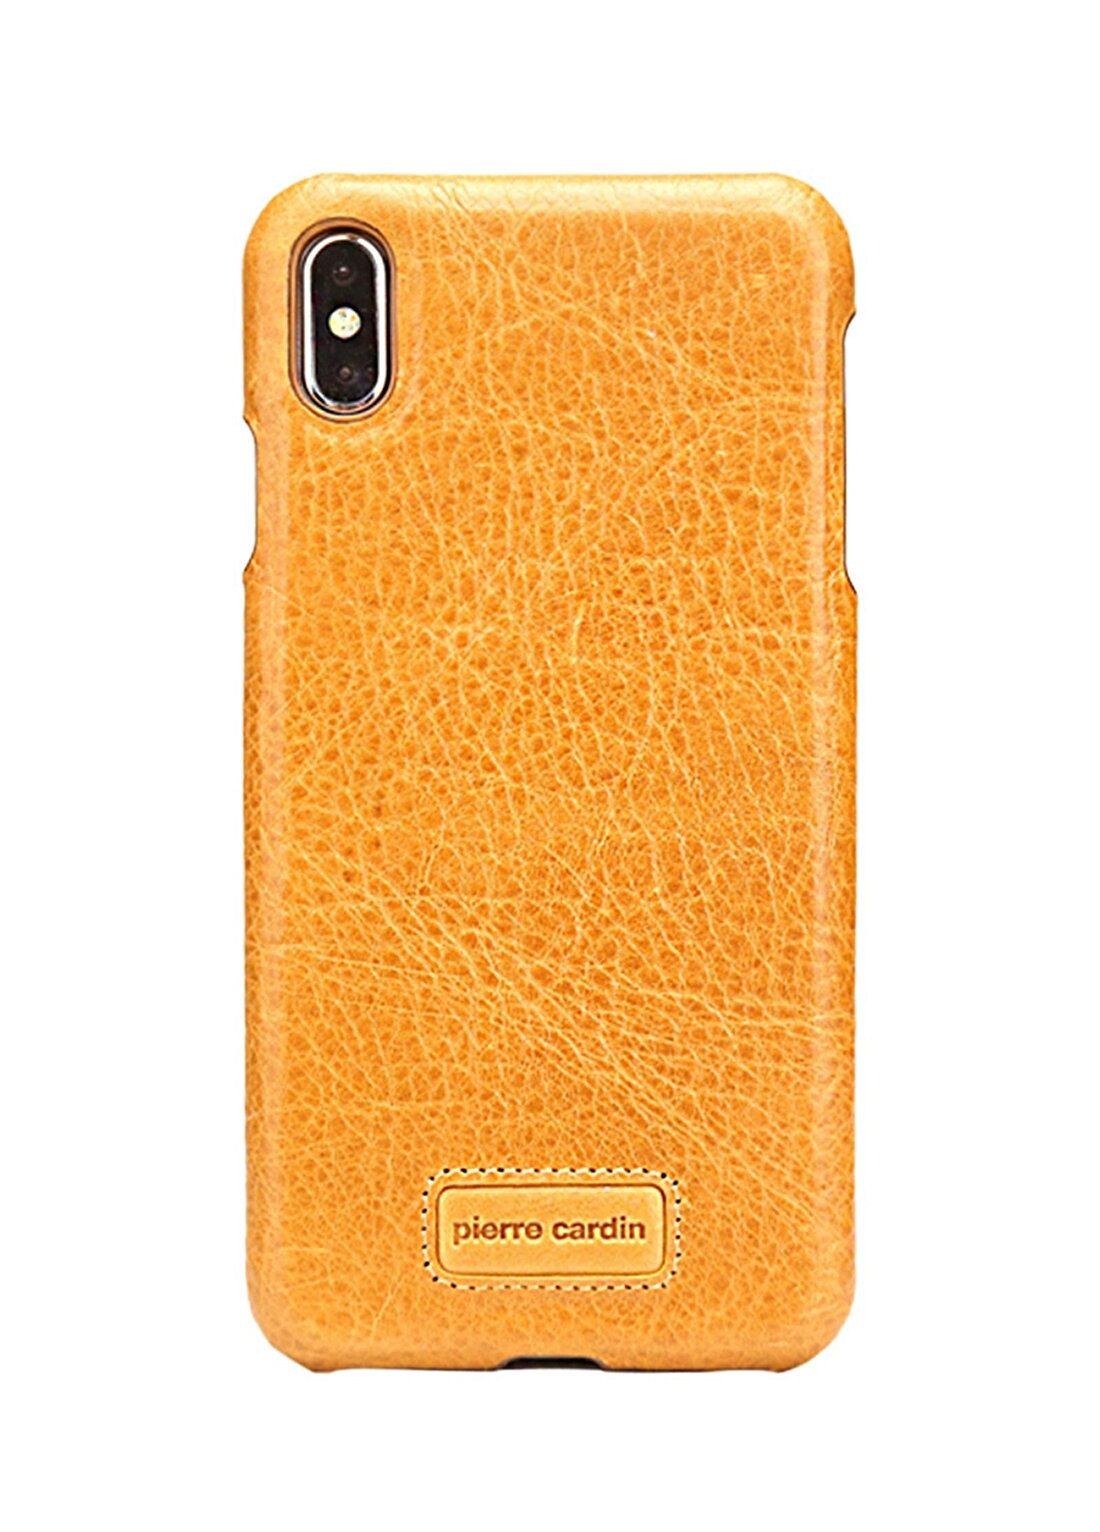 Pierre Cardin PCS-S05 Iphone XS Max (6.5) Sarı Klasik Deri Arka Kapak Telefon Aksesuarı